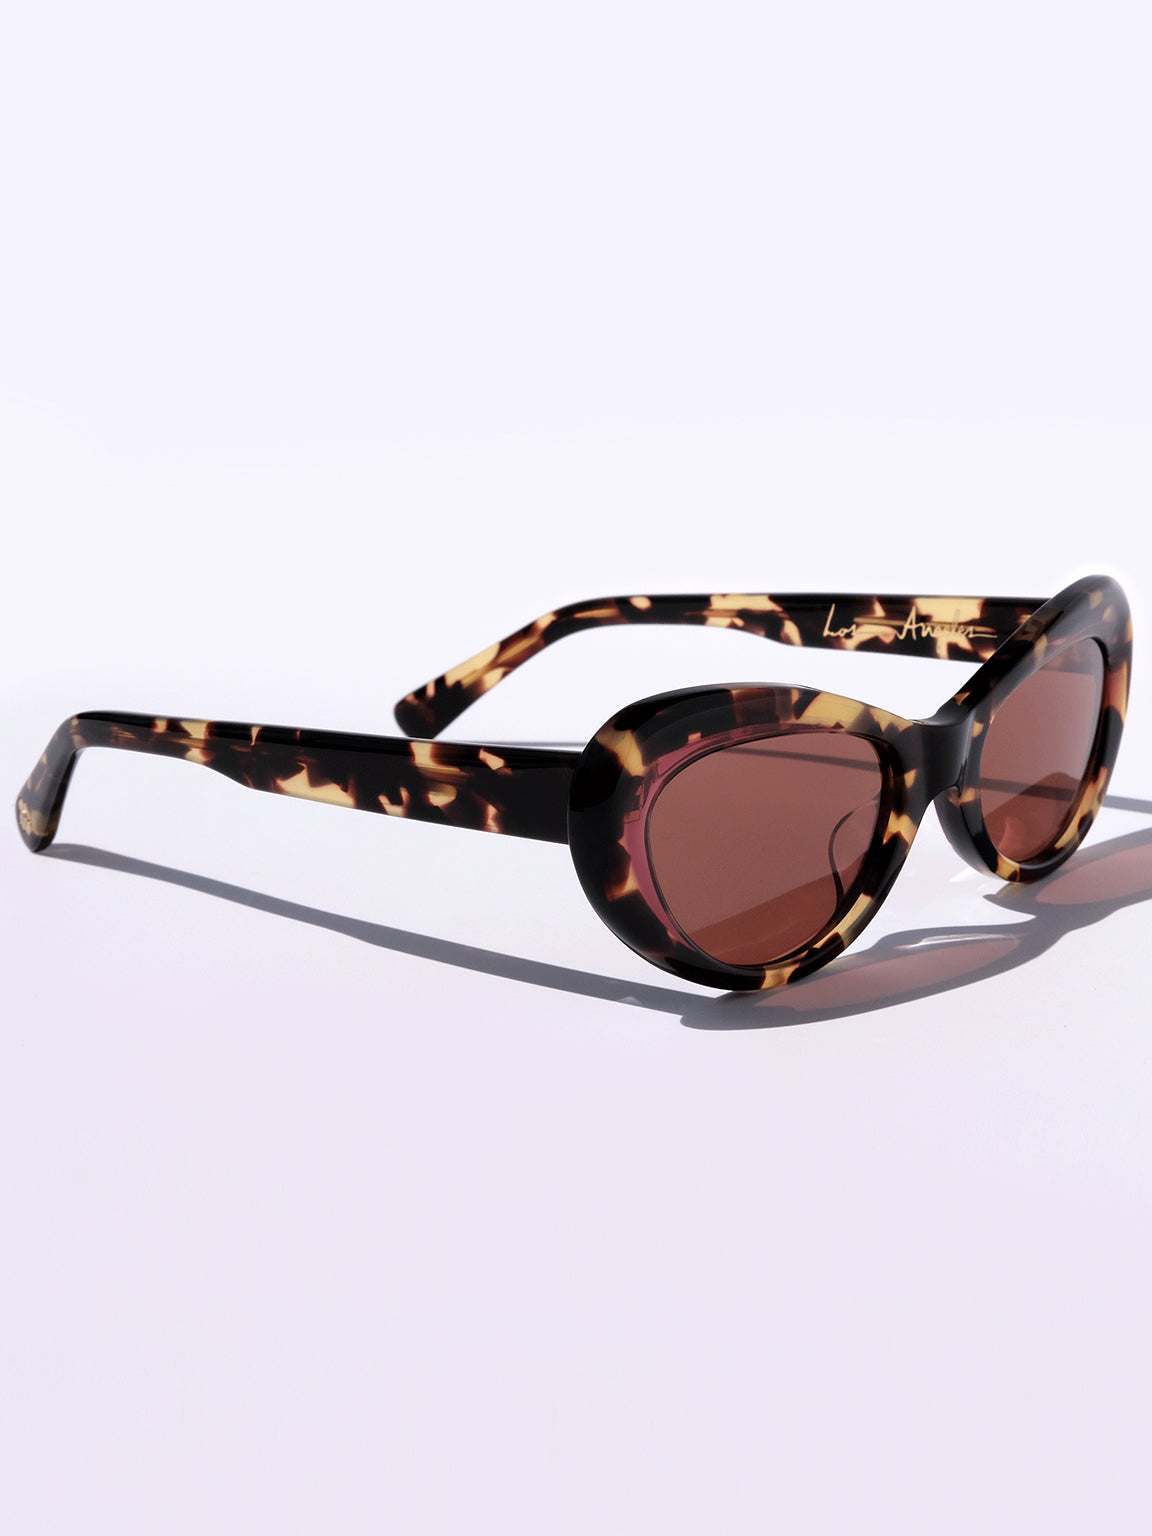 Brown Cat-eye tortoiseshell-acetate sunglasses